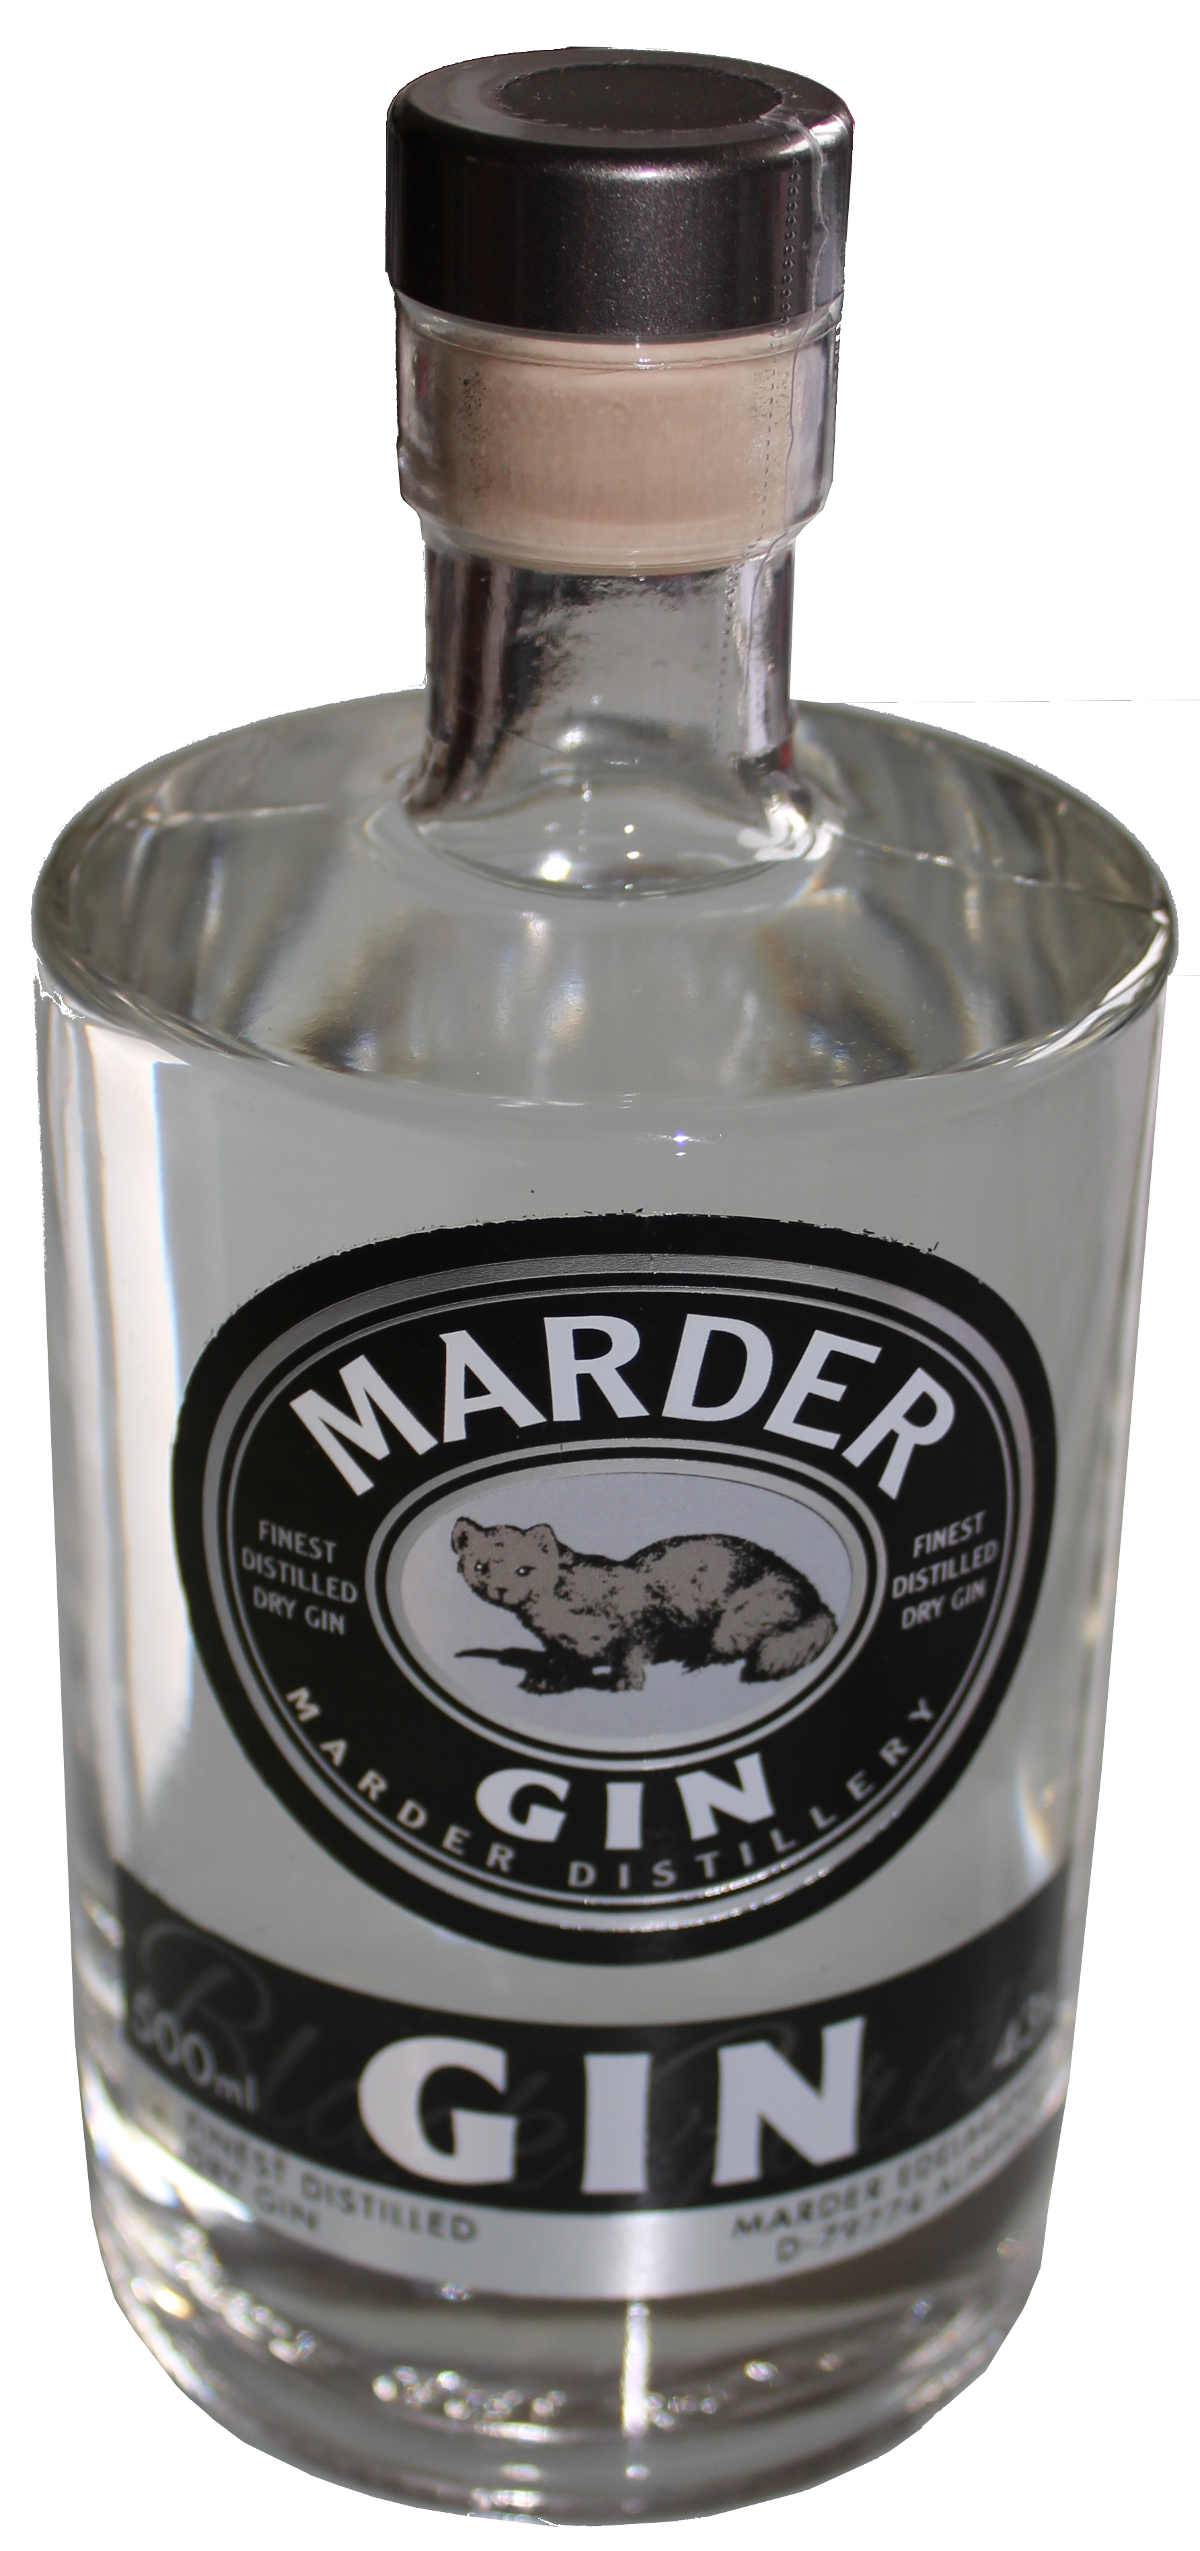 Marder Finest Distilled Dry Gin